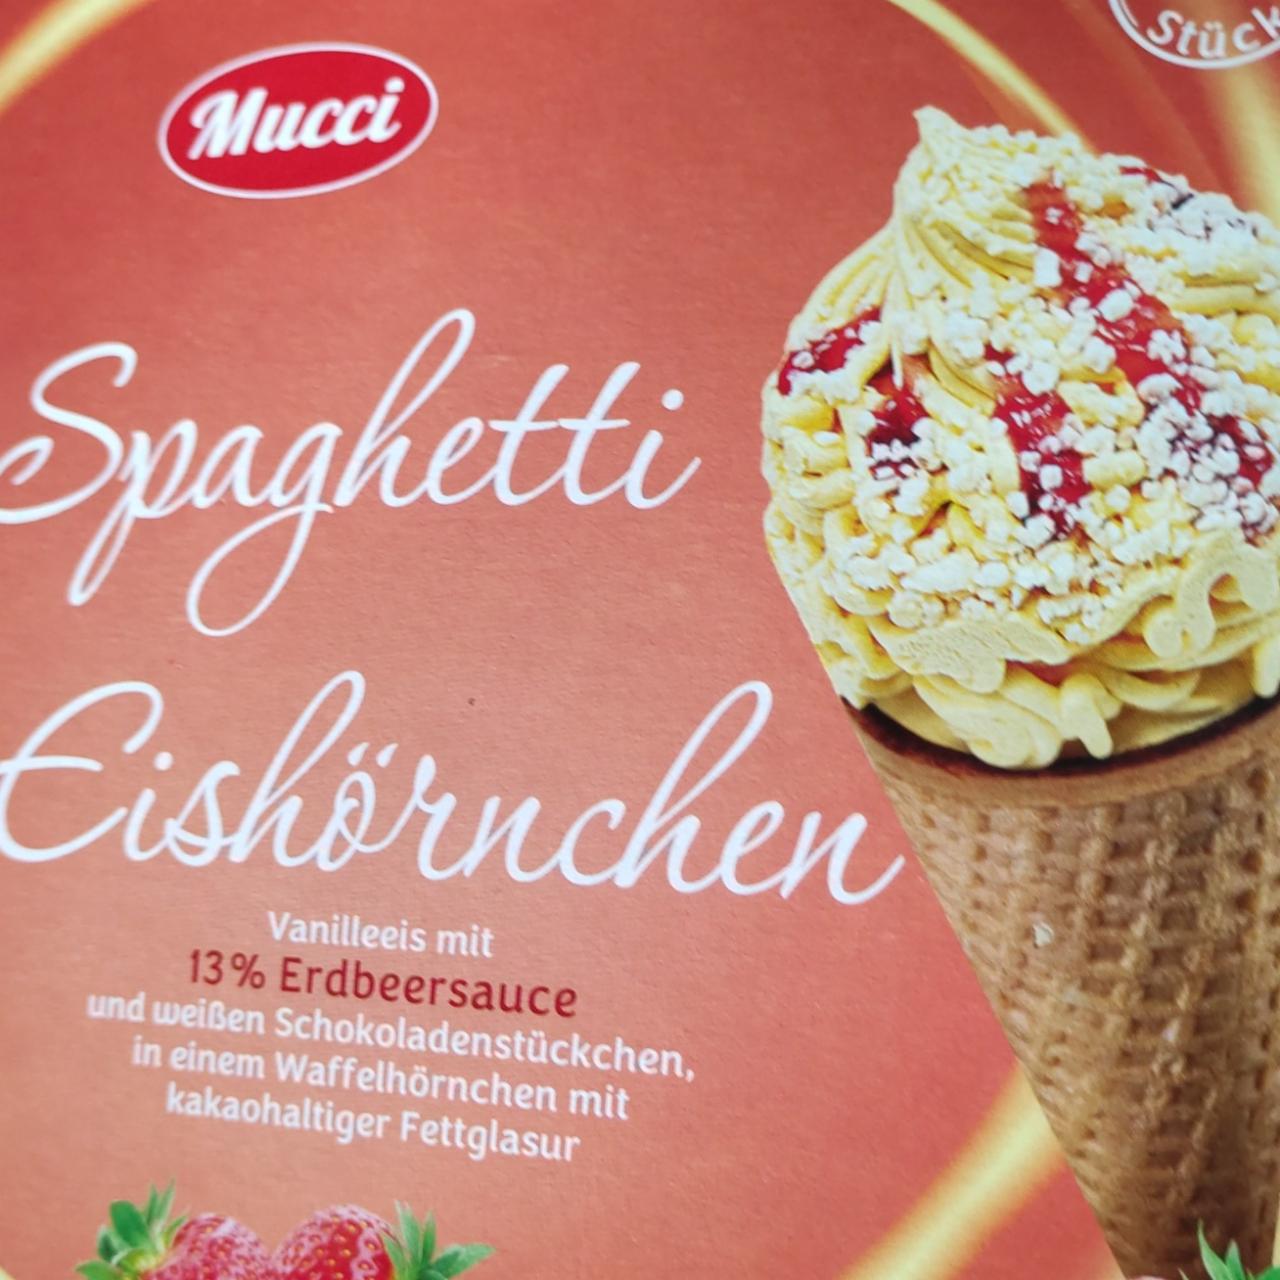 Фото - Spaghetti Eishörchen Mucci